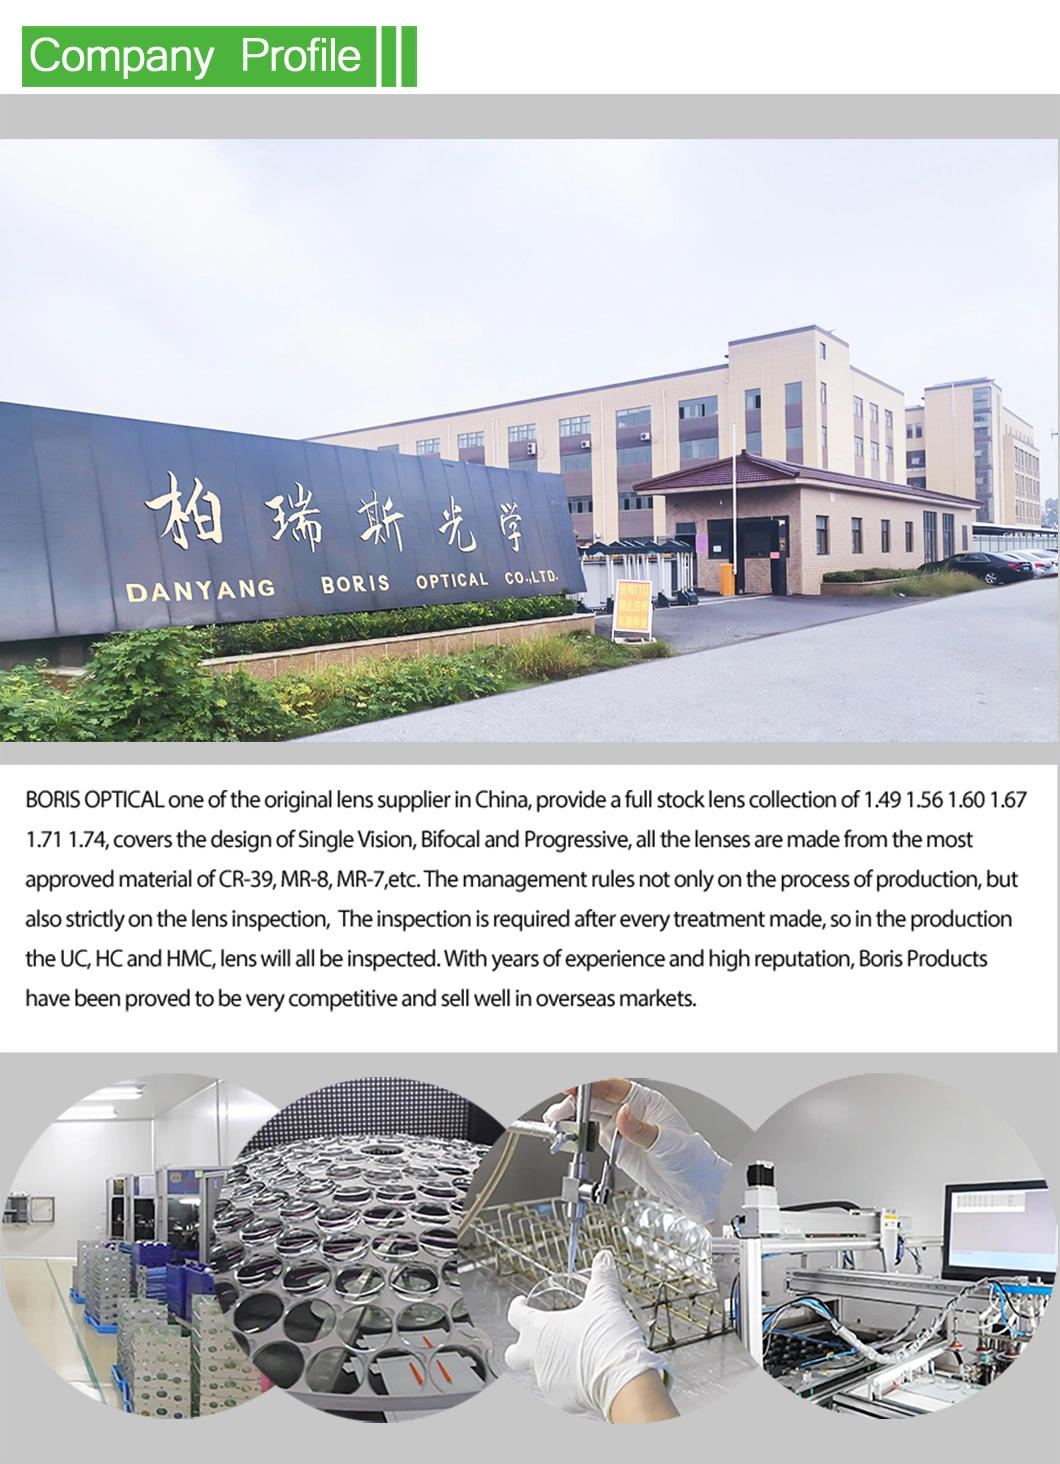 1.56 Bifocal Round Top Hmc Optical Lenses China Manufacture